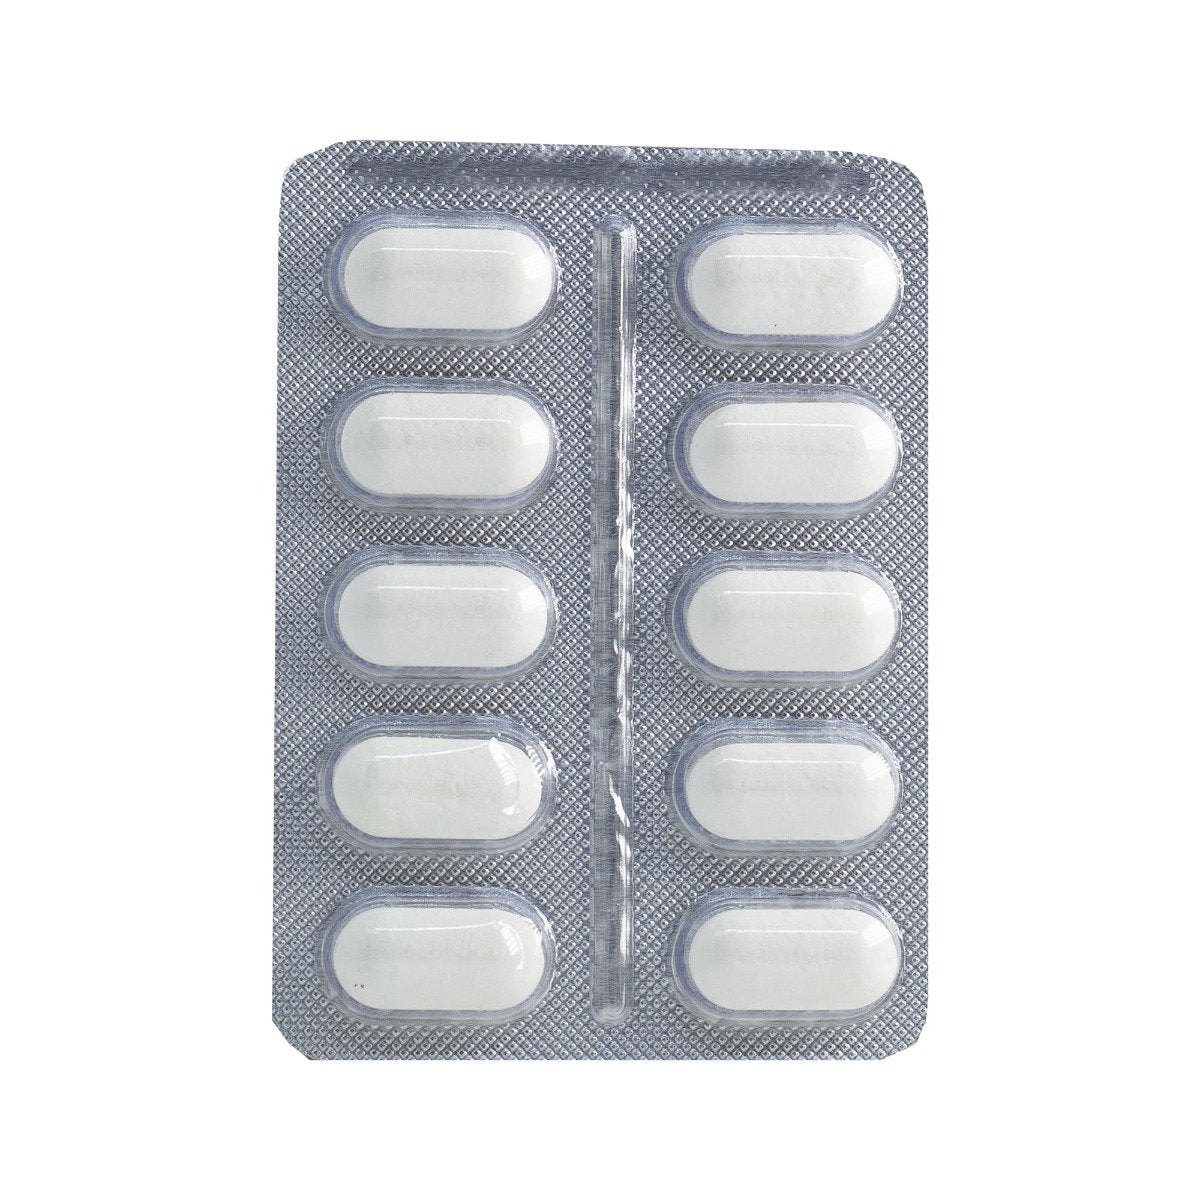 Novalgin Oblong 500 mg - 10 Tablets - Bloom Pharmacy